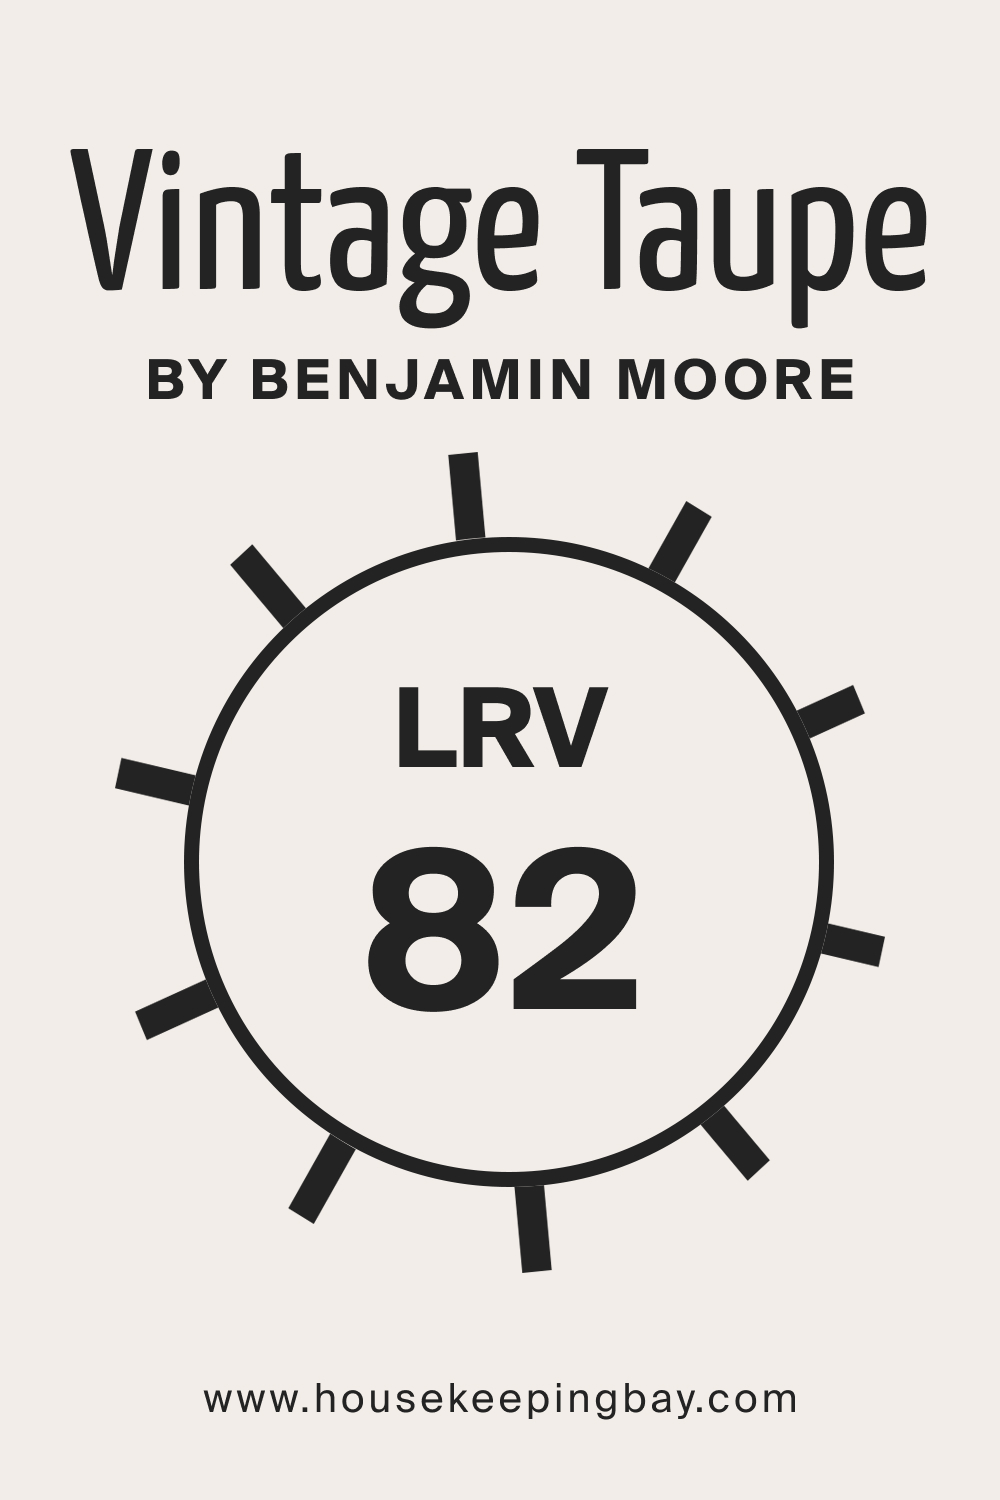 Vintage Taupe 2110 70 by Benjamin Moore. LRV – 82